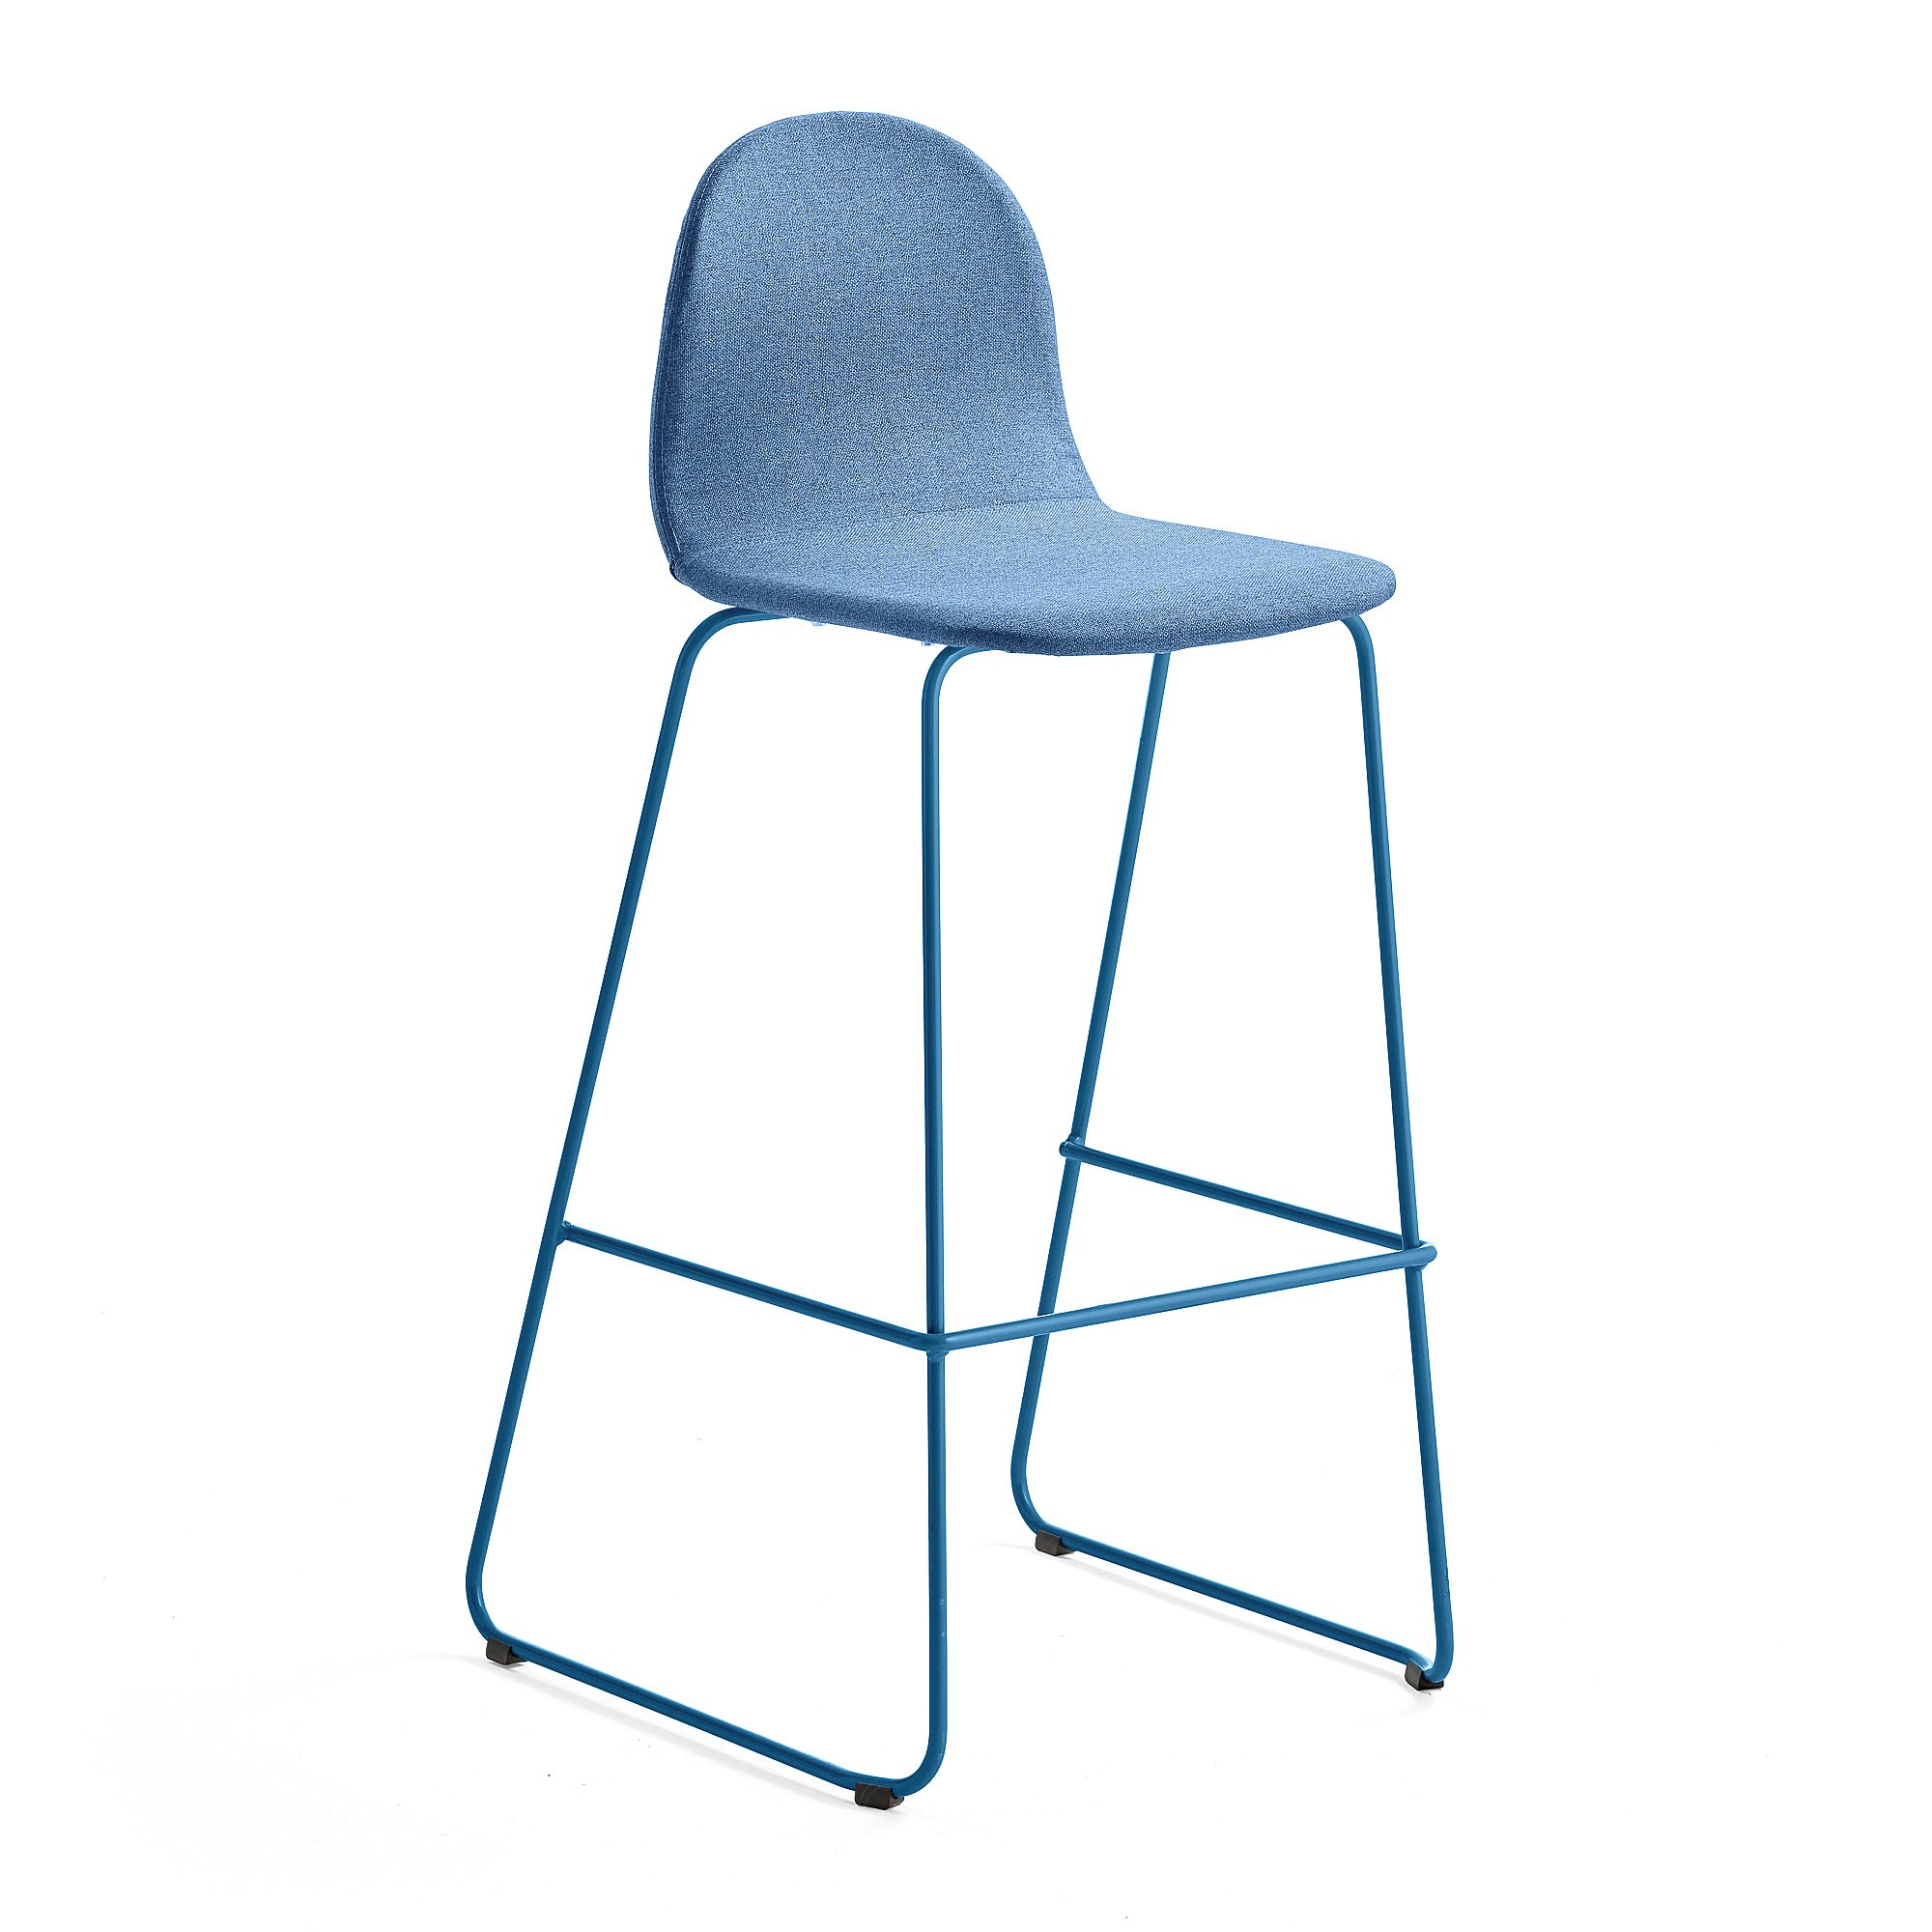 Barová židle GANDER, výška sedáku 790 mm, polstrovaná, modrá